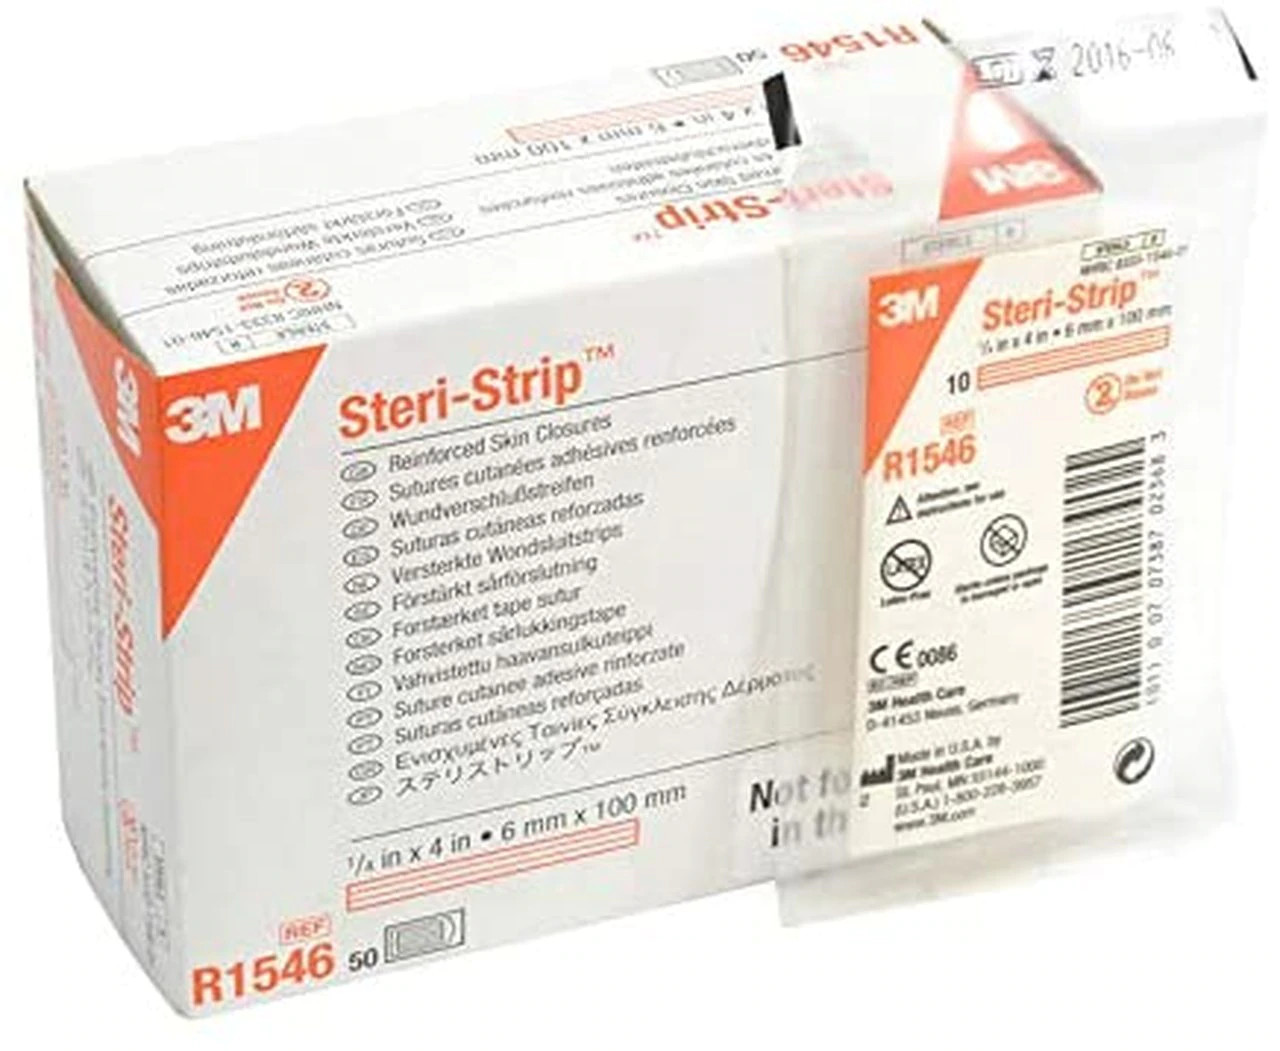 3M Steri Strip Reinforced Adhesive Skin Closures